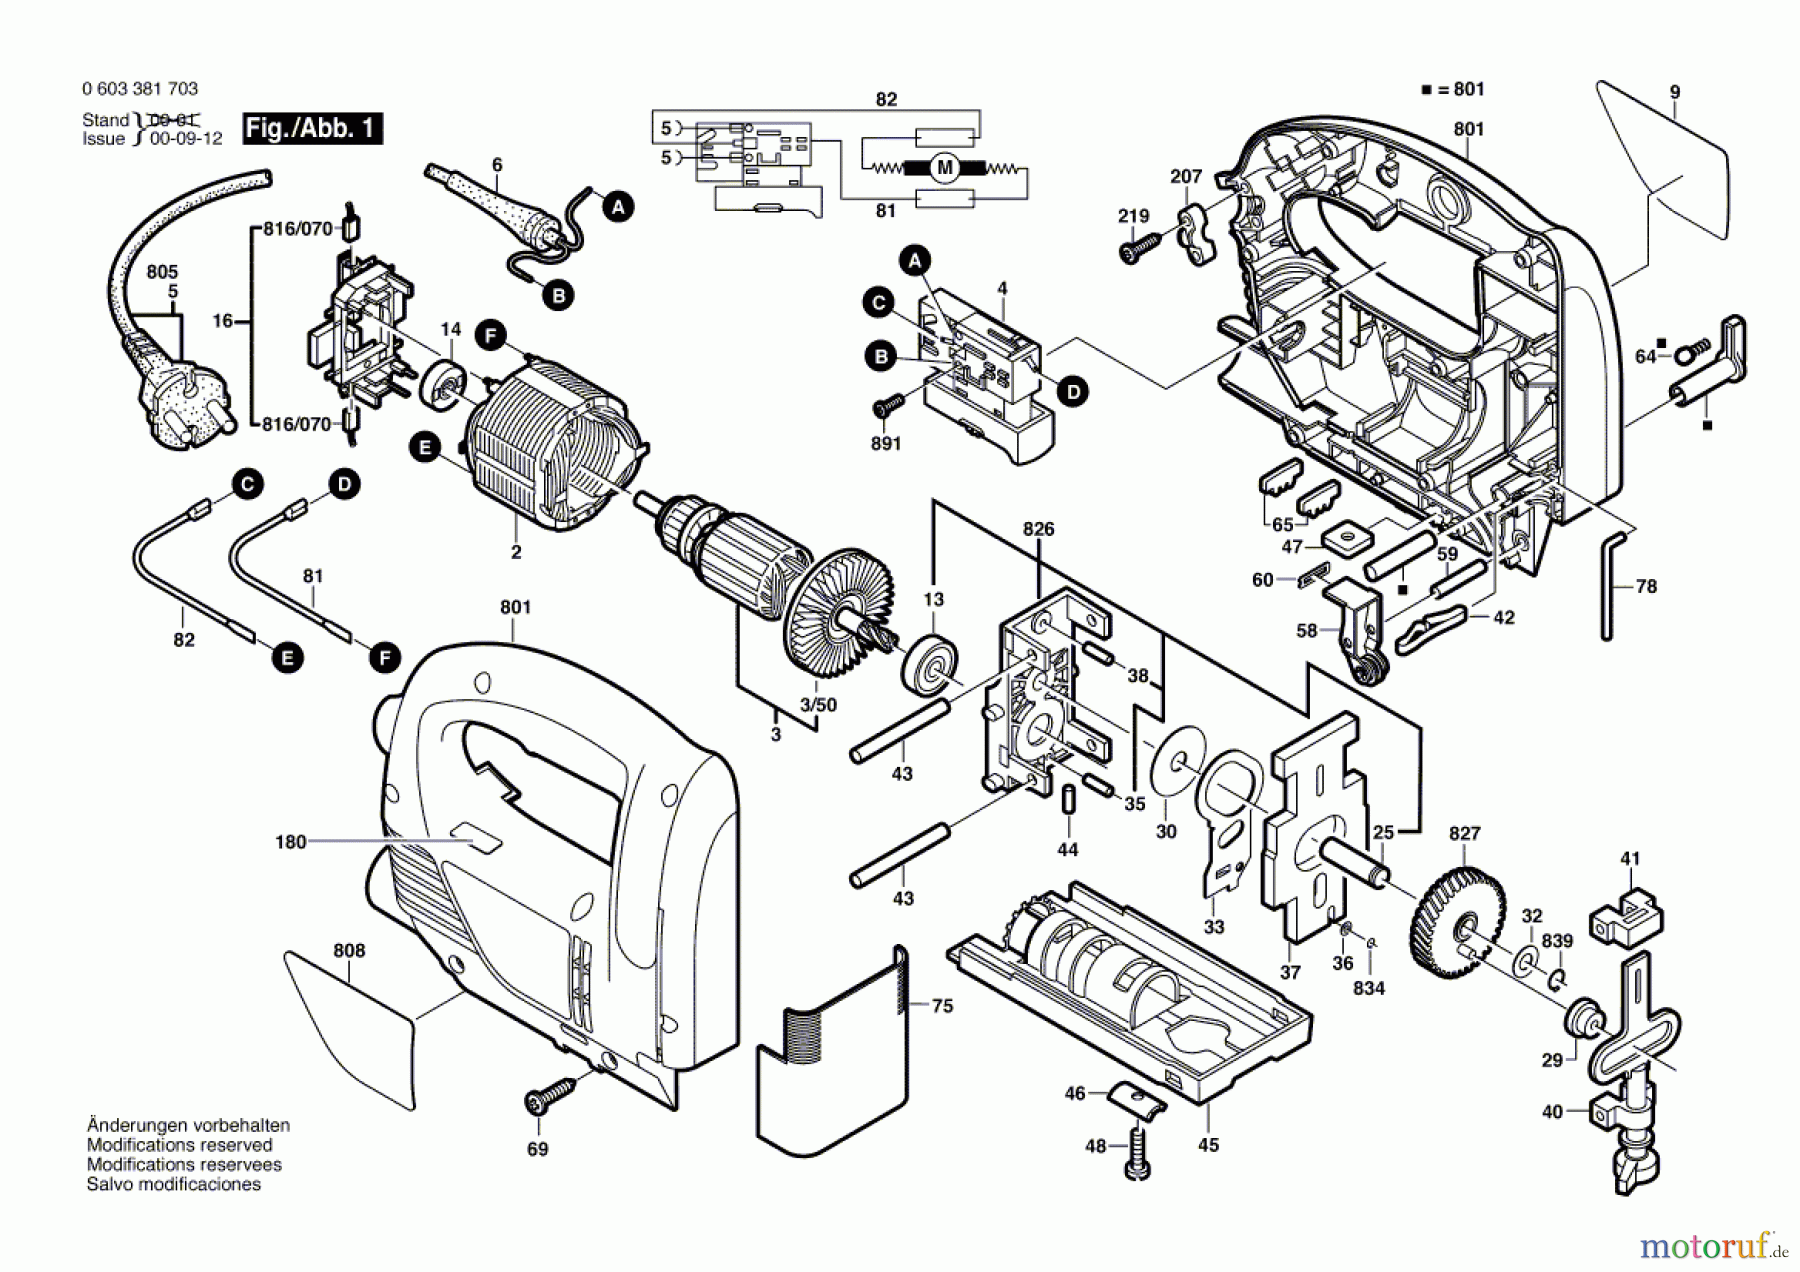  Bosch Werkzeug Stichsäge PST 650 PE Seite 1